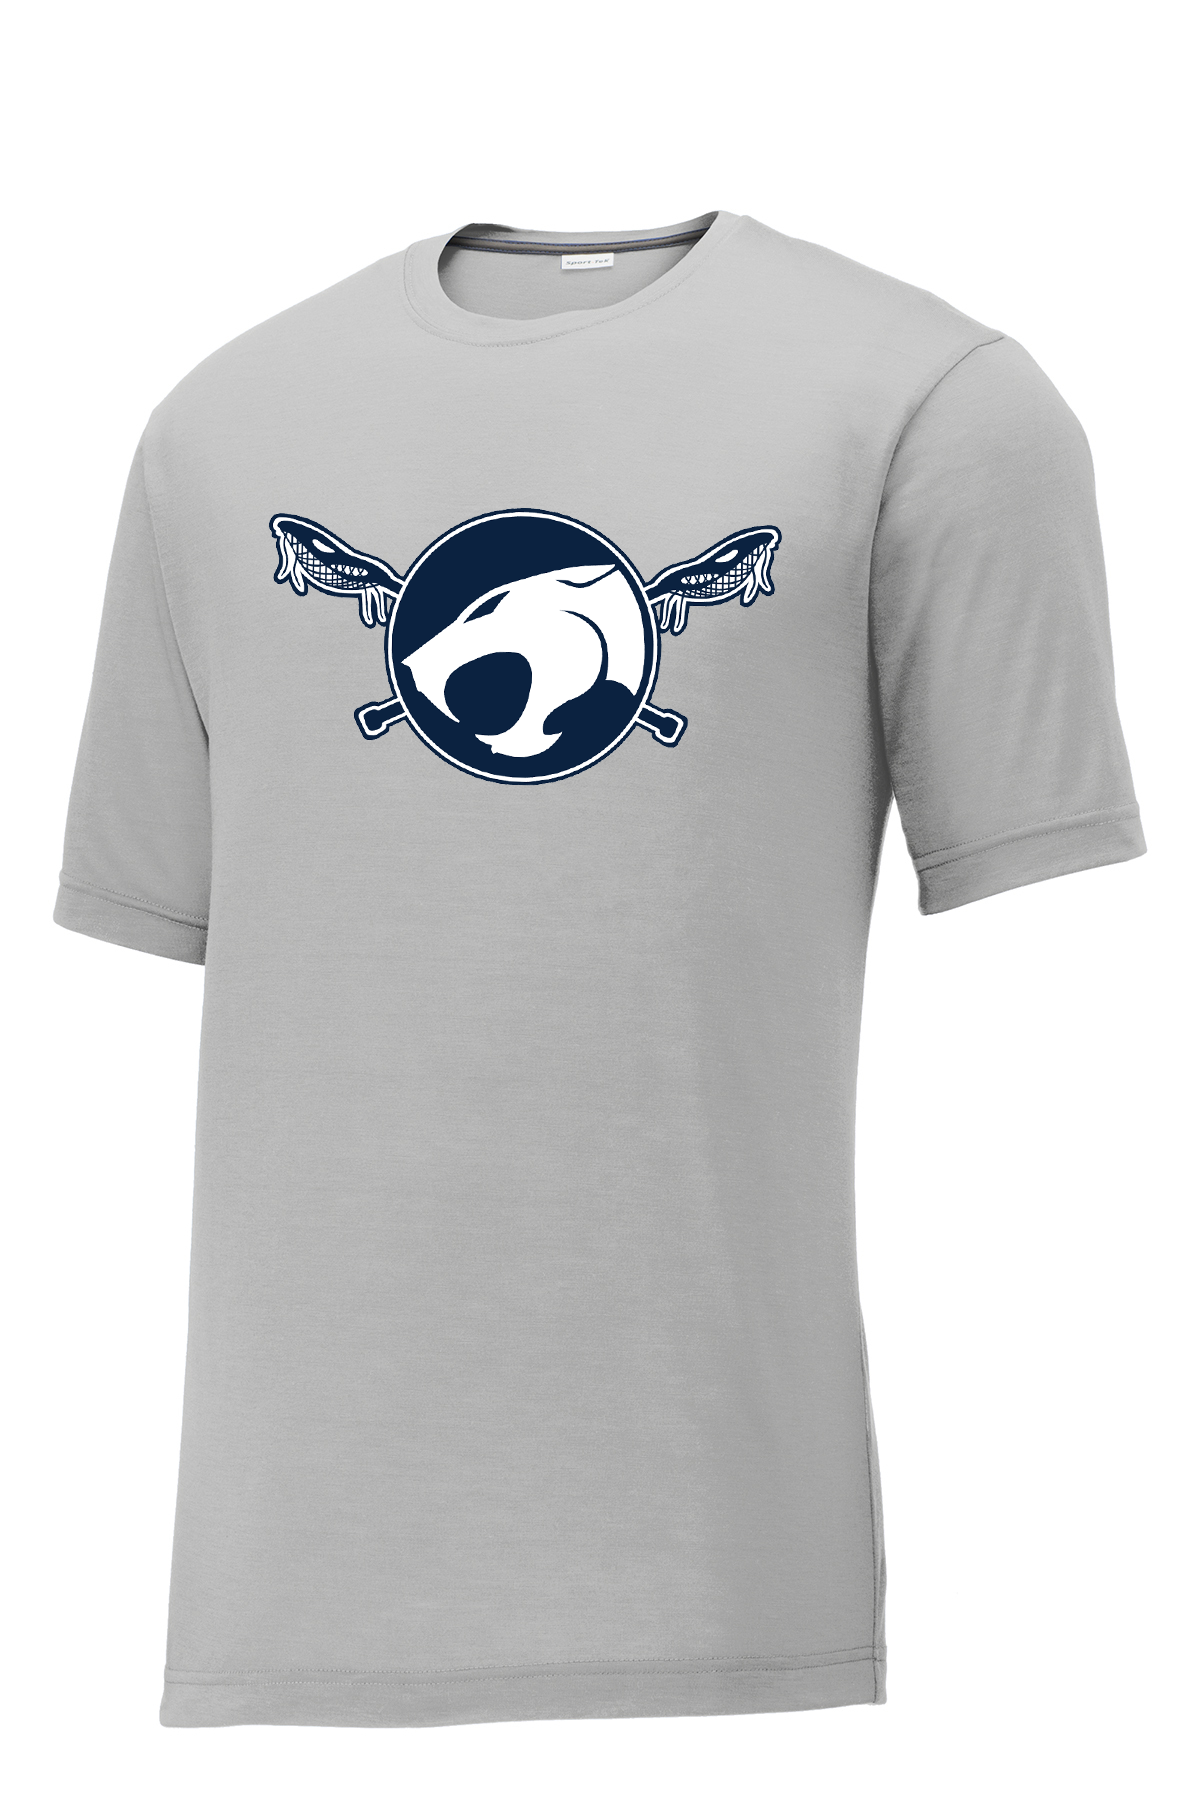 Reitz Lacrosse Silver CottonTouch Performance T-Shirt